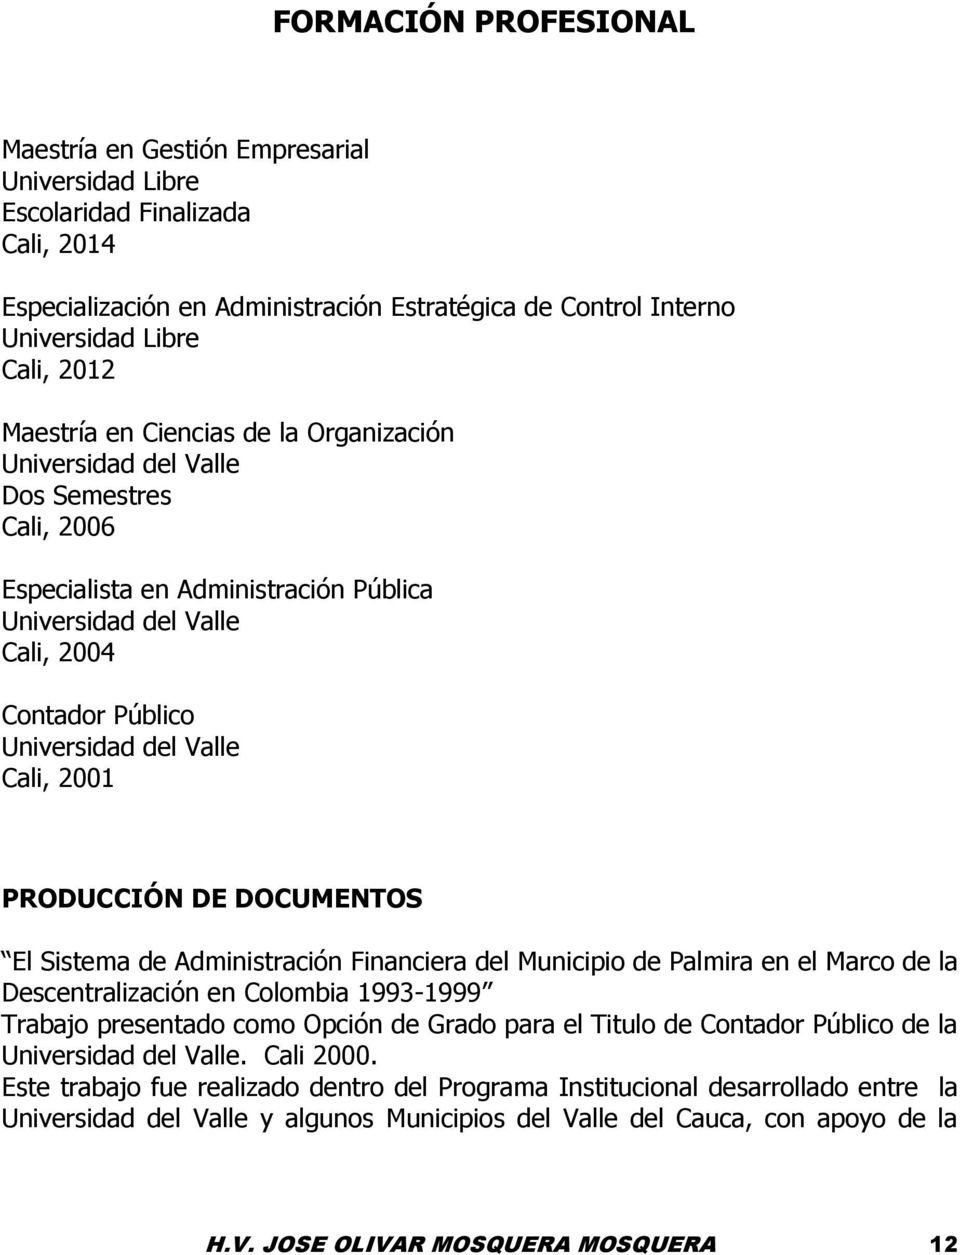 Cali, 2001 PRODUCCIÓN DE DOCUMENTOS El Sistema de Administración Financiera del Municipio de Palmira en el Marco de la Descentralización en Colombia 1993-1999 Trabajo presentado como Opción de Grado